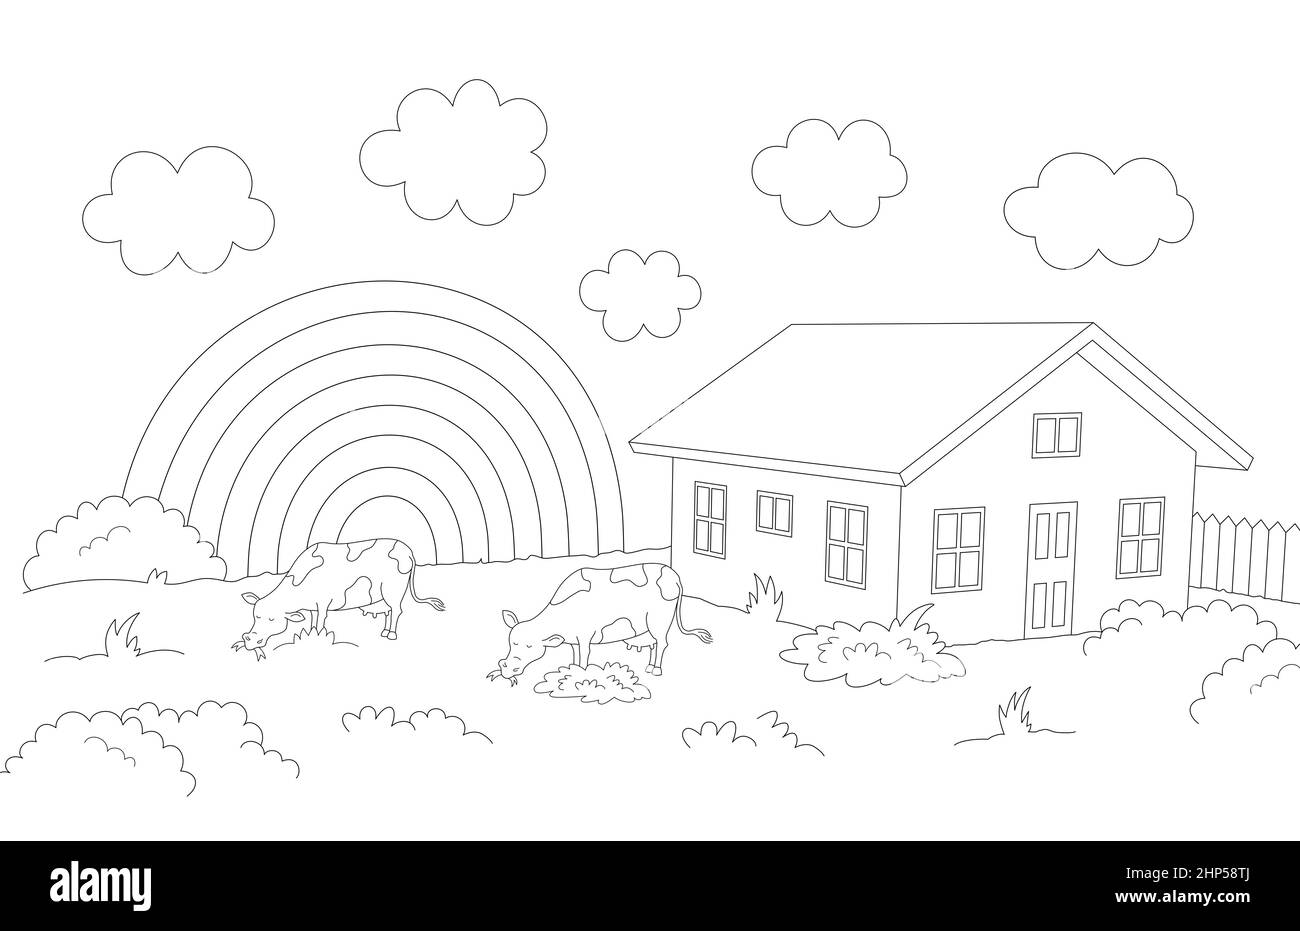 paesaggio rurale con mucche che che mangiano erba e una casa, nuvole e un arcobaleno sullo sfondo, contorno disegno 3d vista prospettica Foto Stock